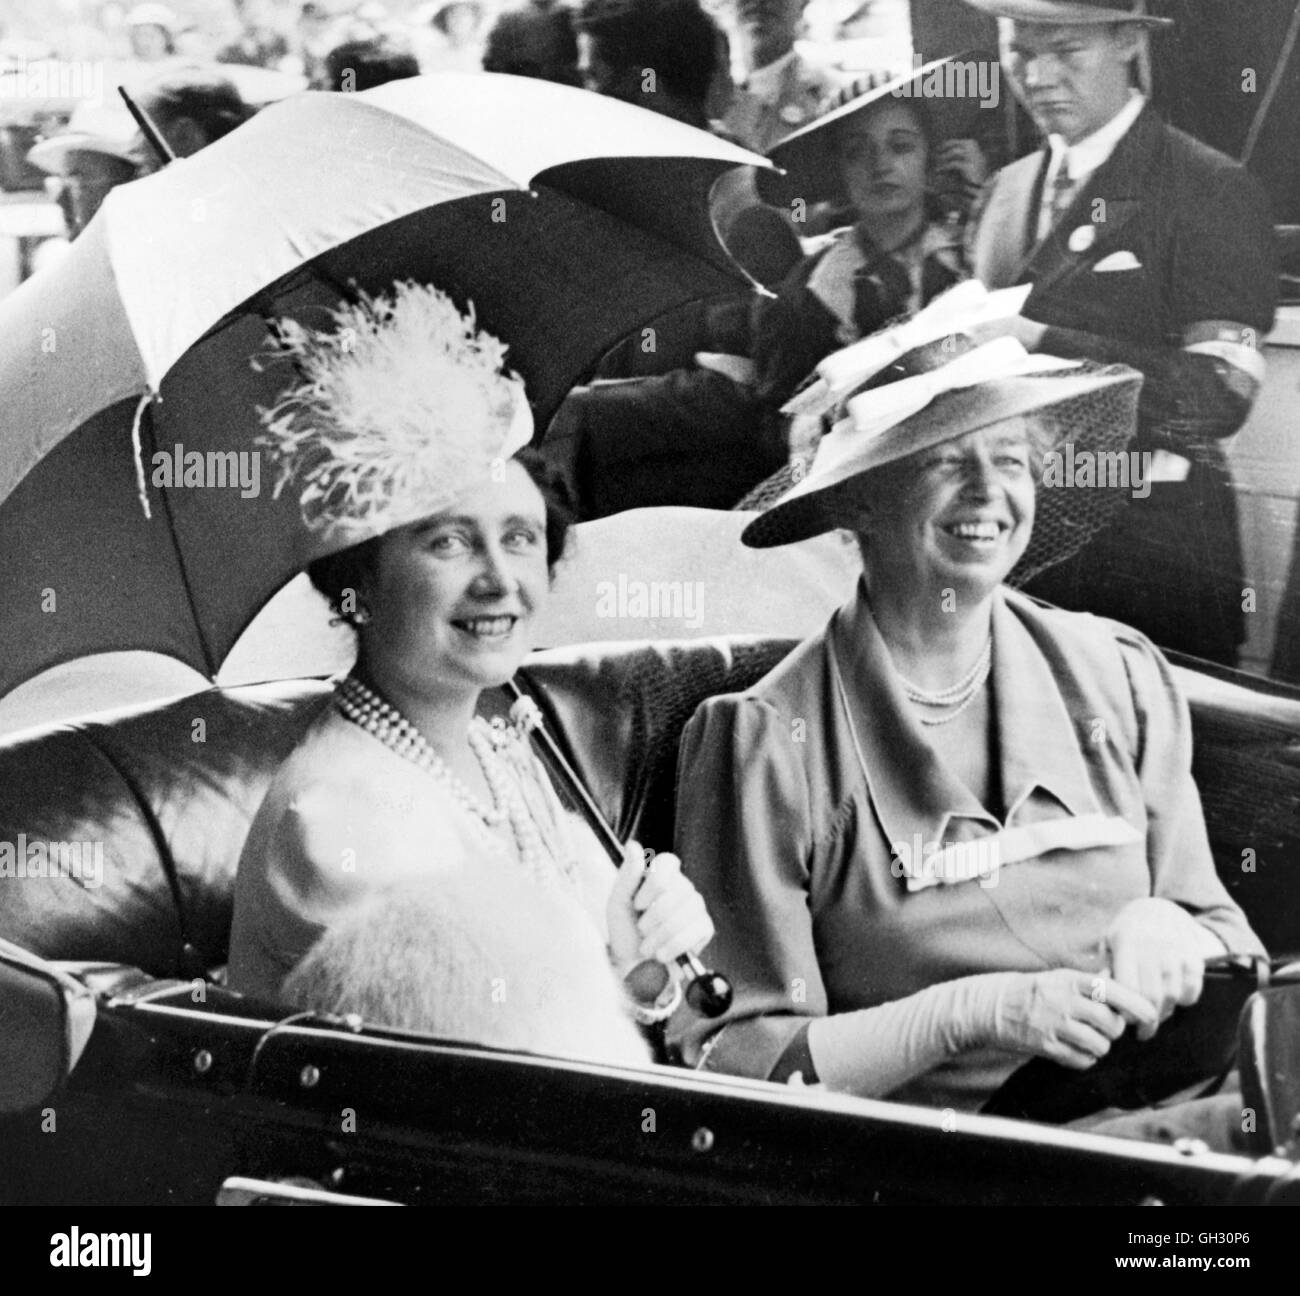 La reine Elizabeth (1900-2002), épouse du roi George VI, avec Eleanor Roosevelt (1884-1962), épouse du président américain. Photo prise en mars 1939, Washington DC. Banque D'Images